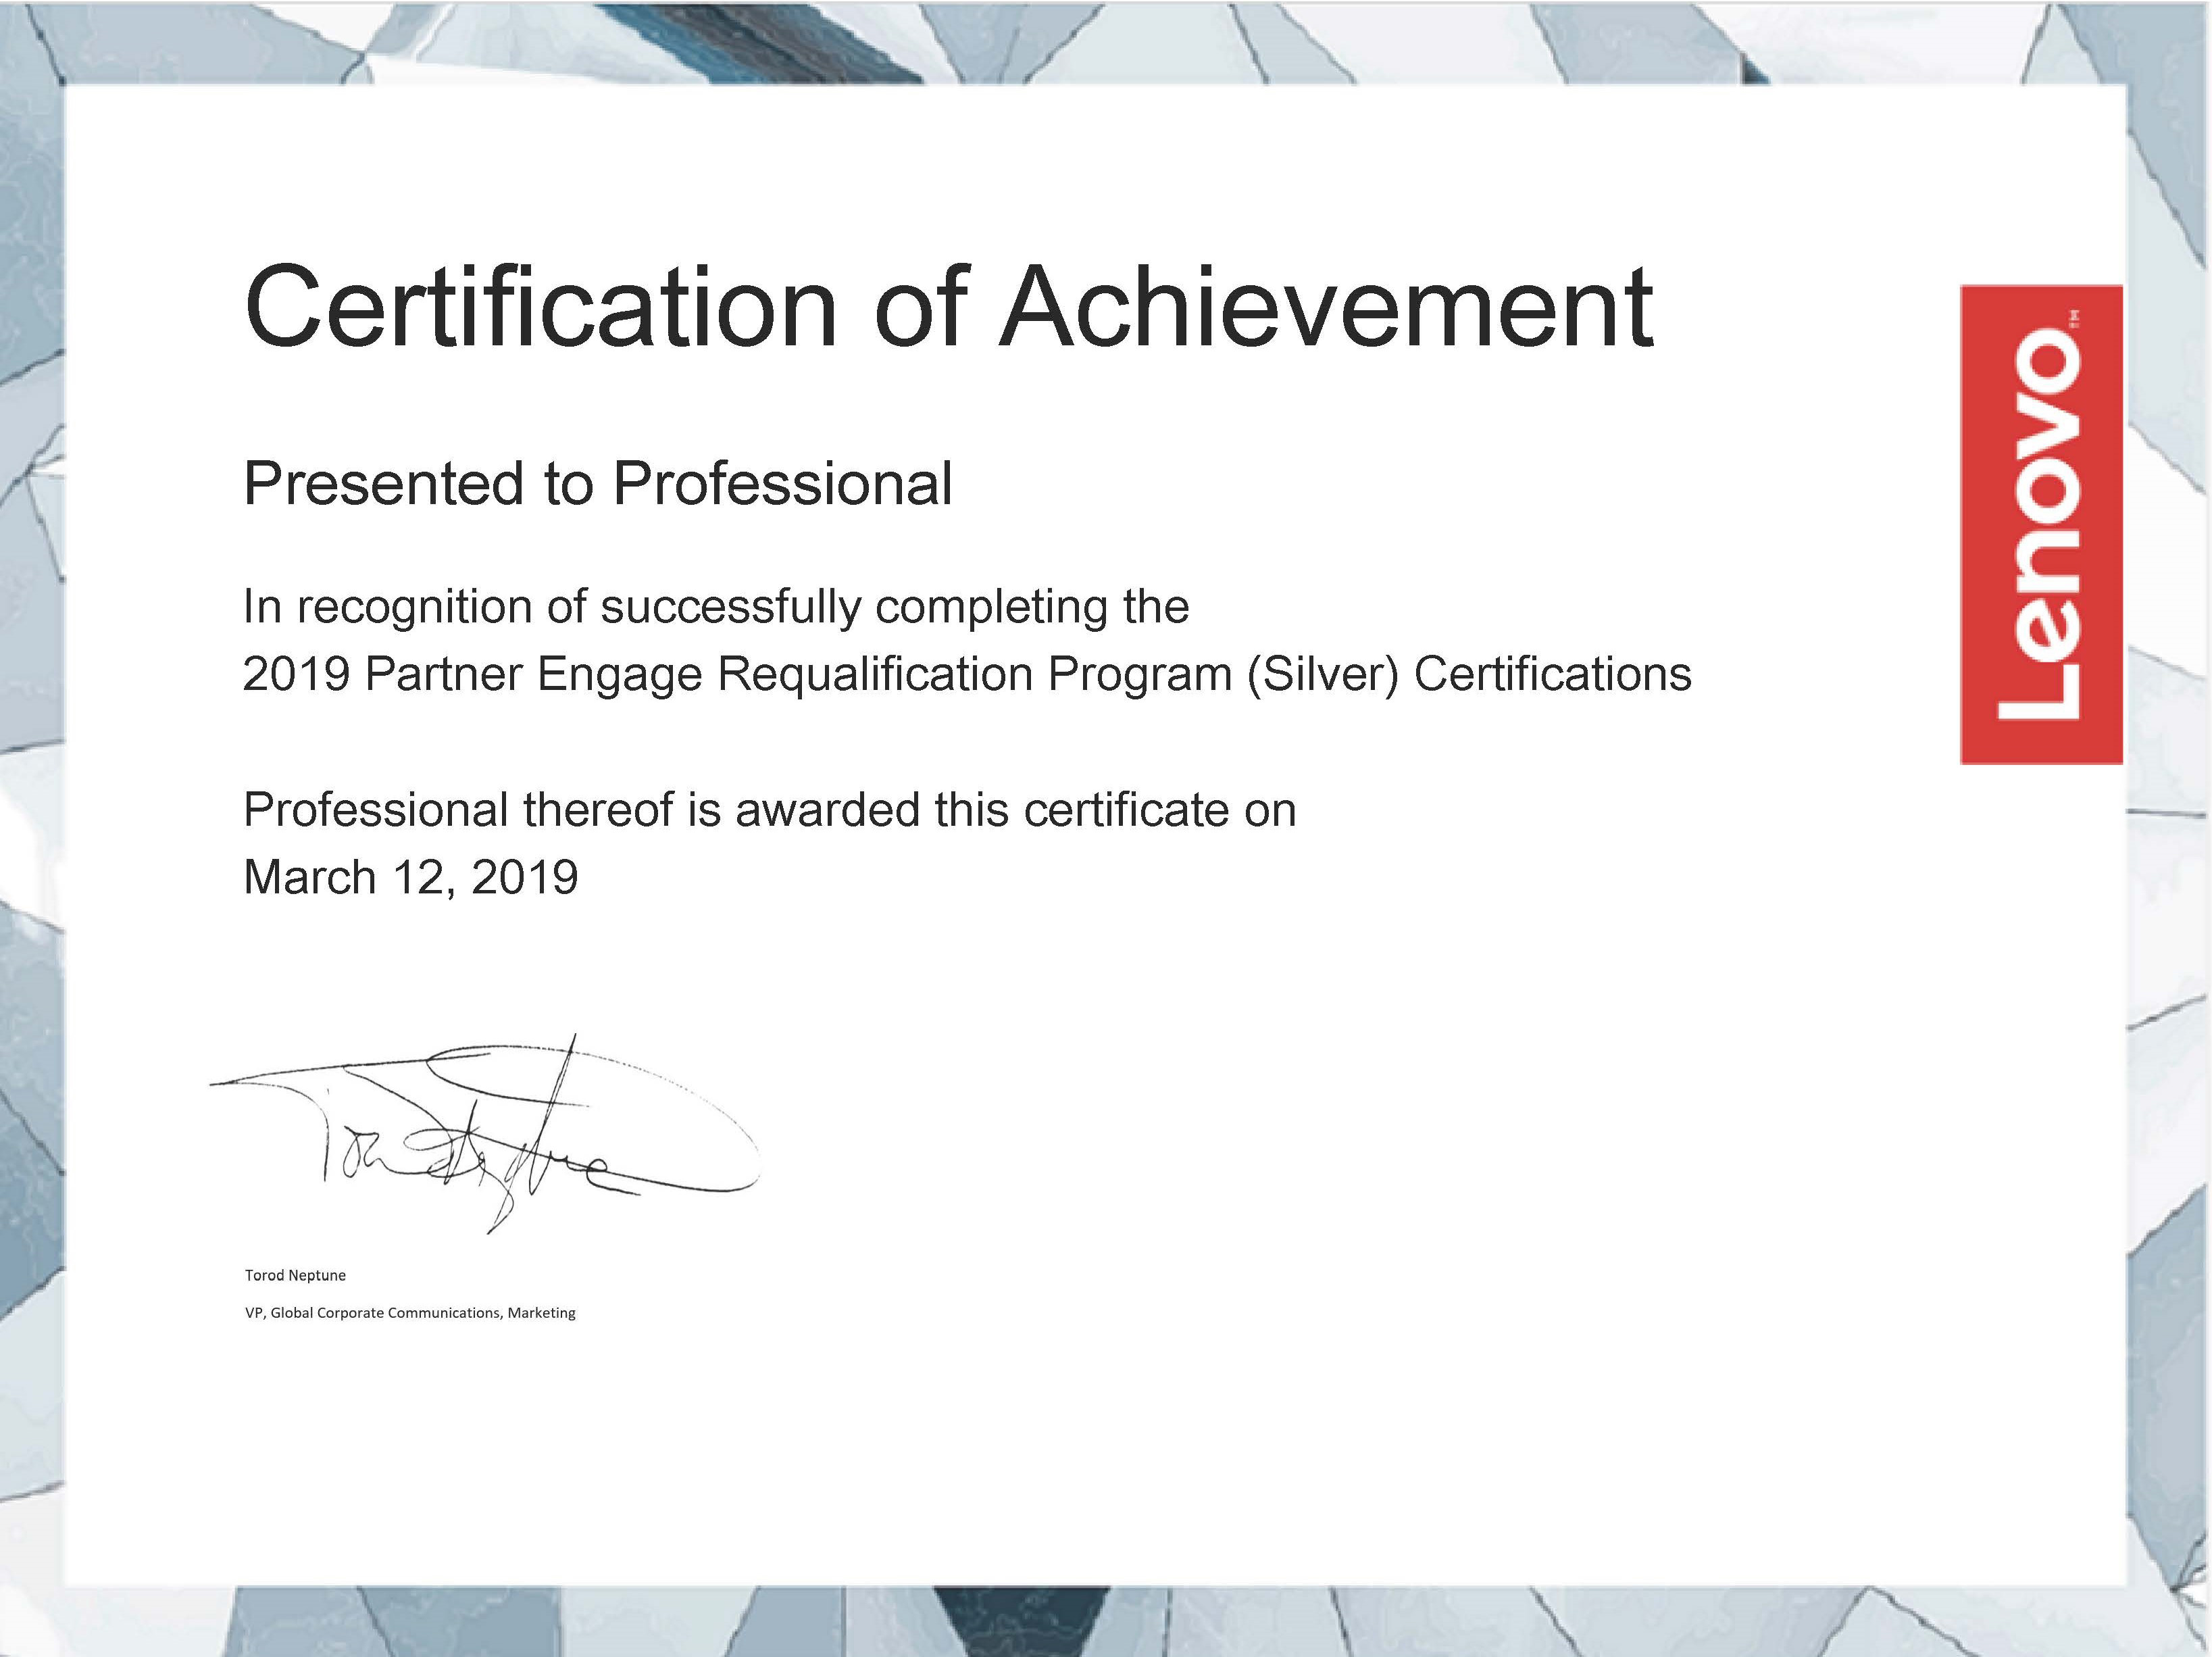 Lenovo Certificate